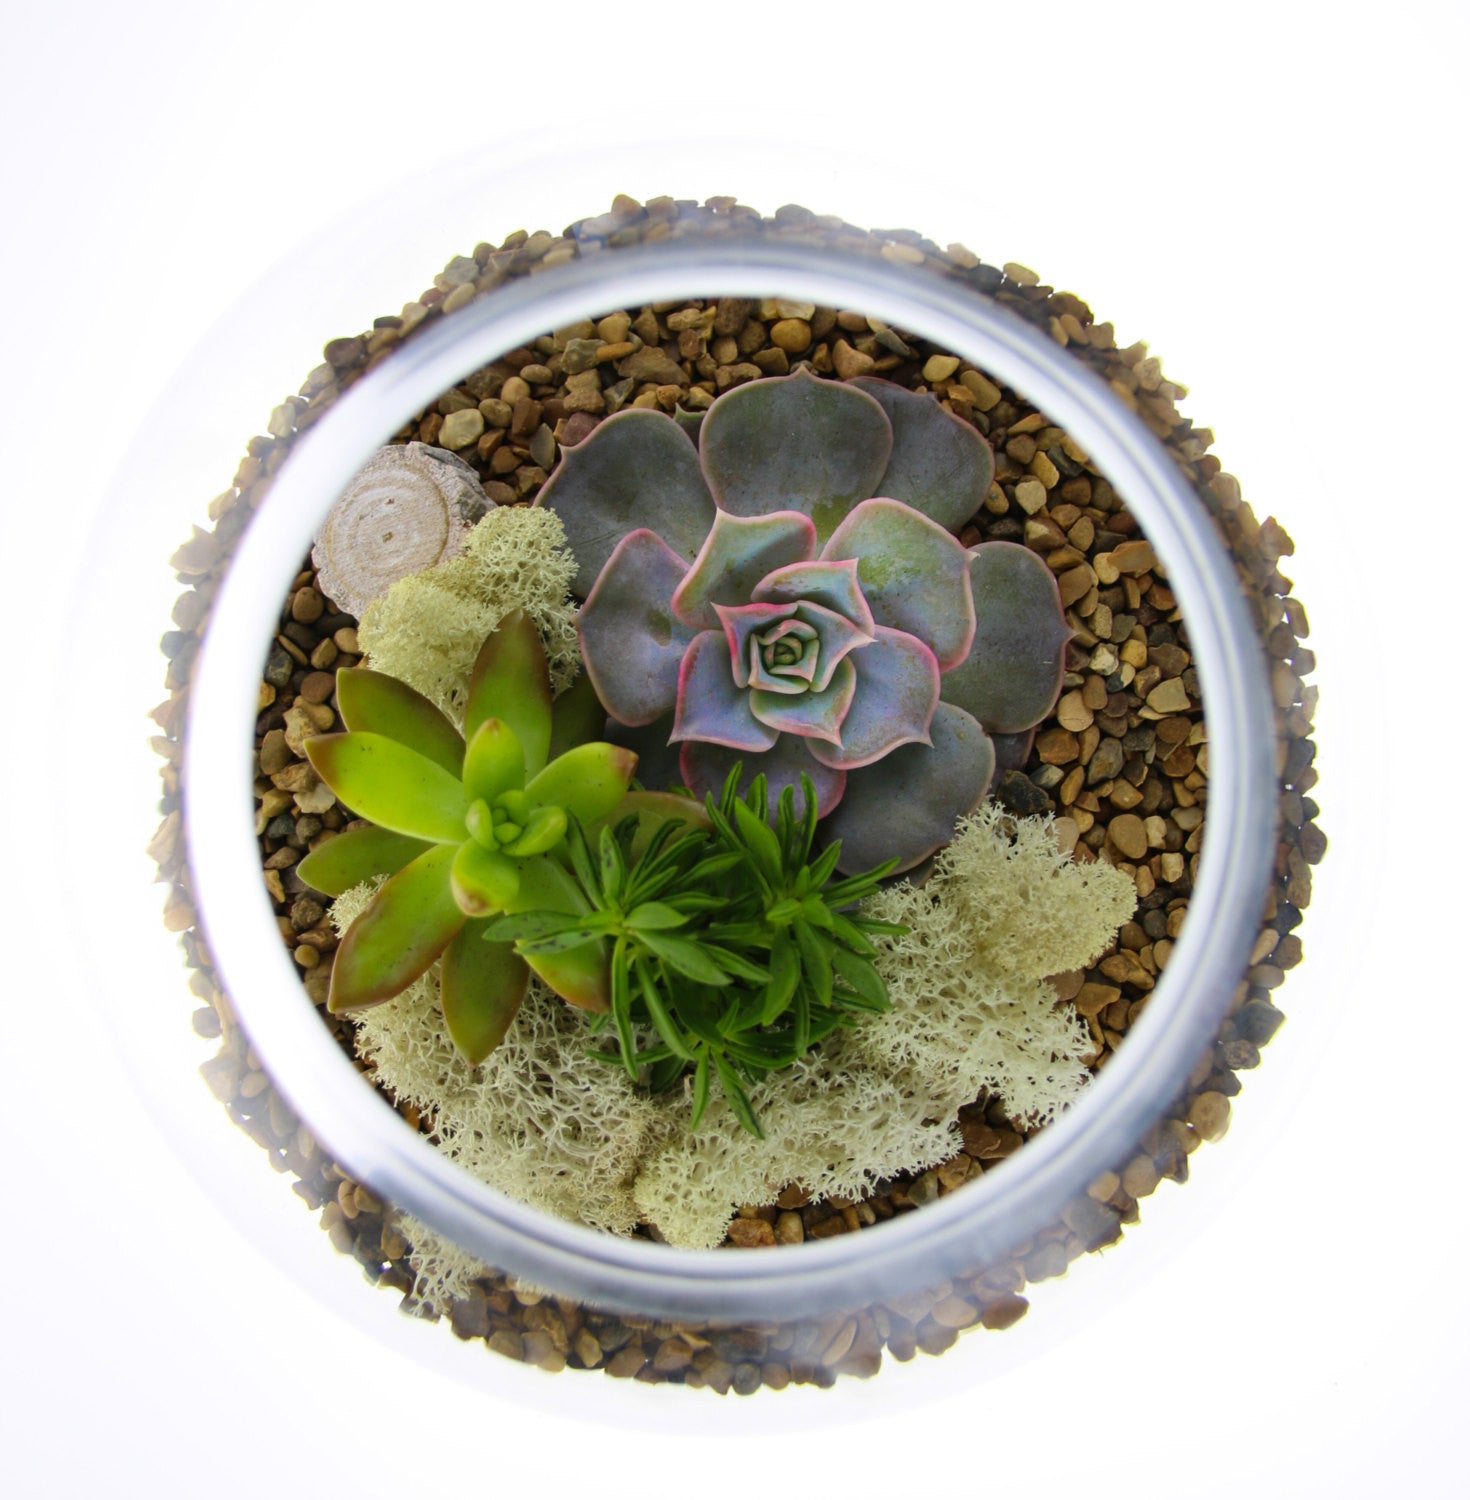 Planted Succulent Terrarium with natural gravel